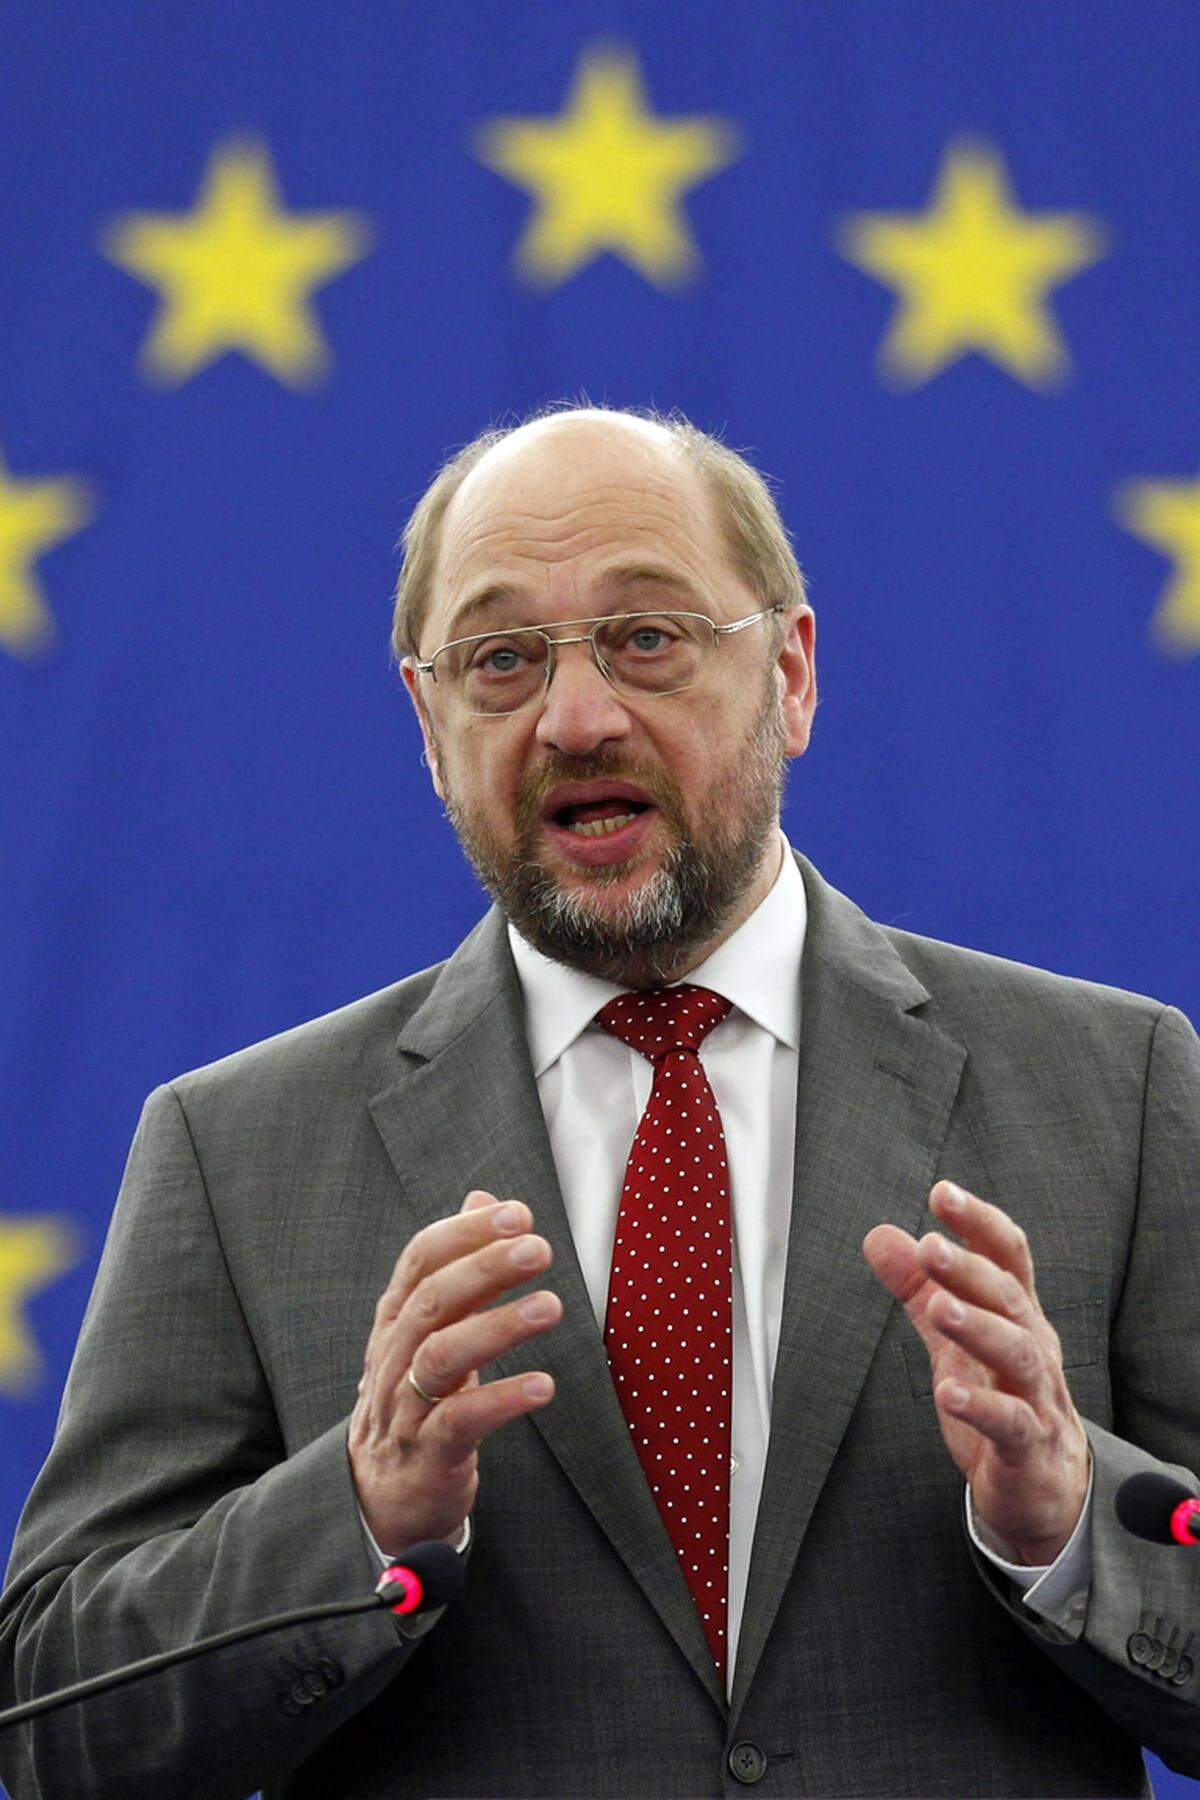 Der Präsident des Europäischen Parlaments, Martin Schulz, machte nach der "Schicksalswahl" einen Schritt auf die Griechen zu. Er forderte Zugeständnisse an das hoch verschuldete Land. So müsse über die Höhe der Zinsen diskutiert werden, sagte der SPD-Politiker am Montag im Deutschlandfunk. Auch gebe es Zahlungsverpflichtungen, die in den vorgegebenen Zeiträumen nicht geleistet werden könnten.